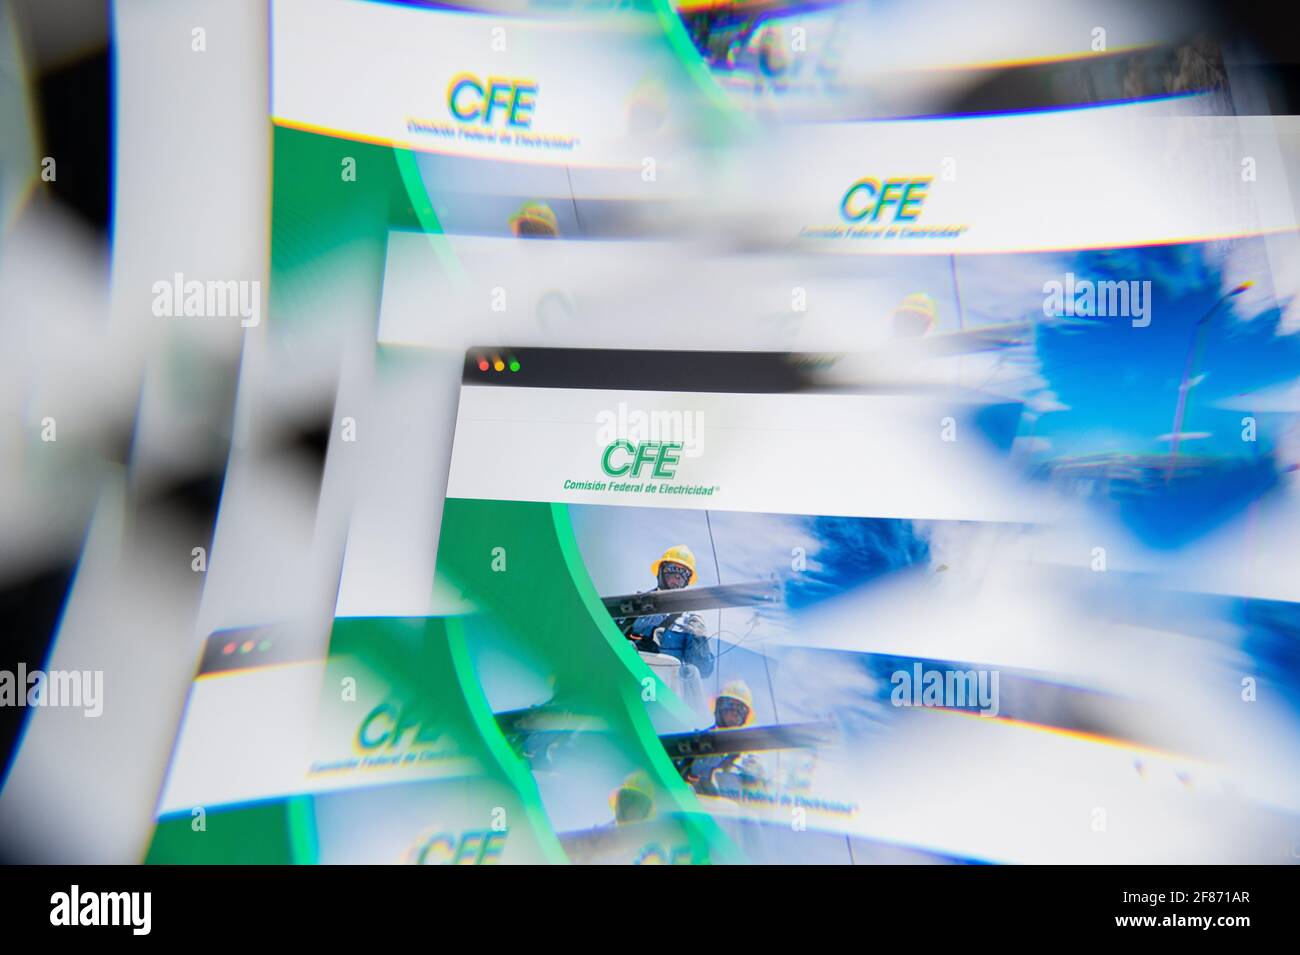 Mailand, Italien - 10. APRIL 2021: CFE-Logo auf dem Laptop-Bildschirm durch ein optisches Prisma gesehen. Illustratives redaktionelles Bild von der CFE-Website. Stockfoto